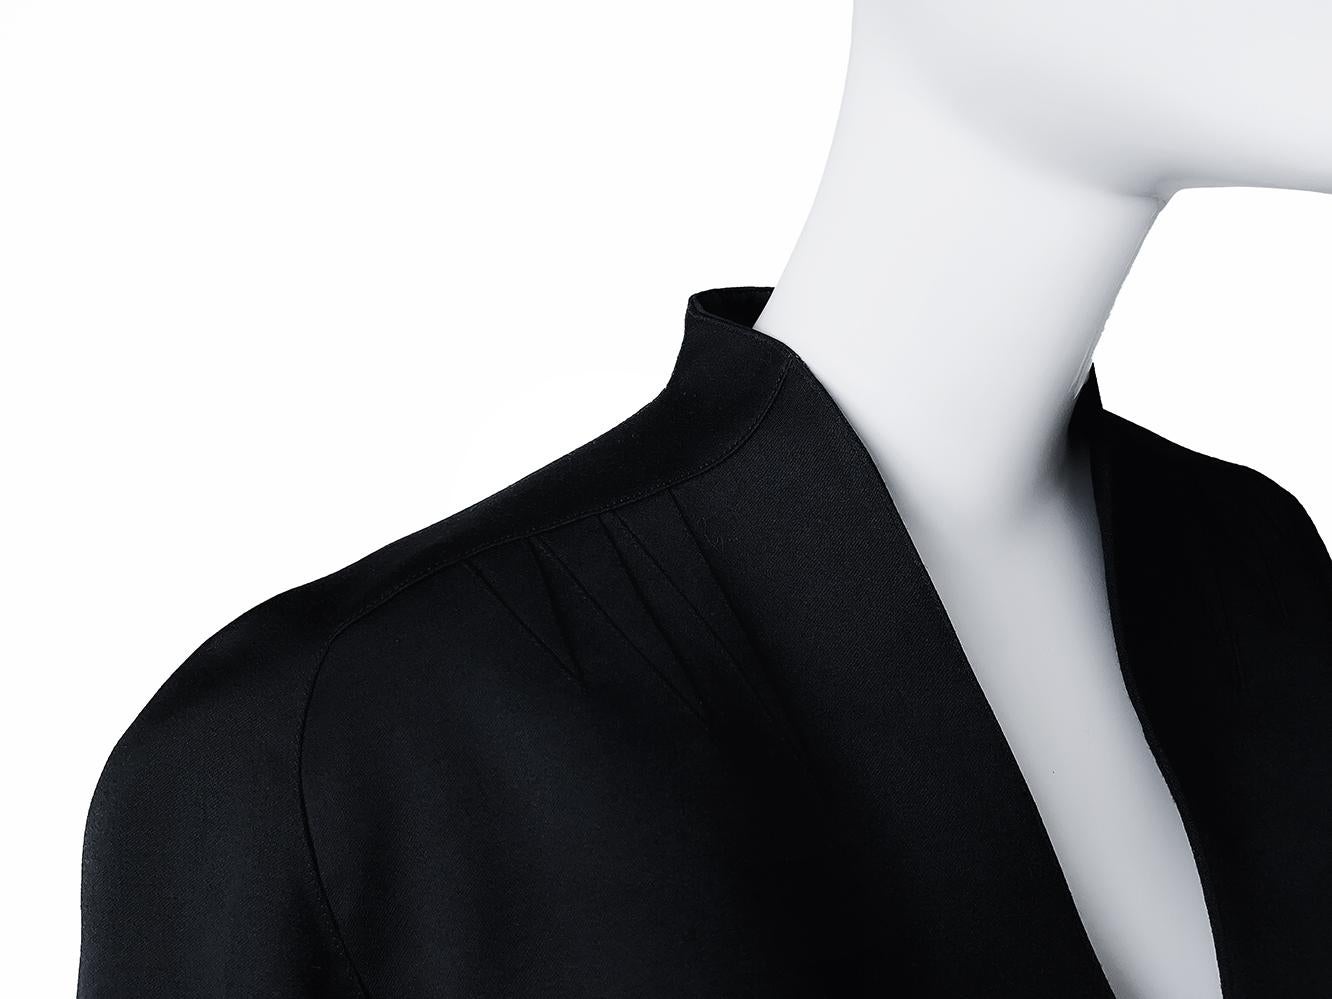 
Atemberaubender Thierry Mugler Rocksuit, zweiteilig (Jacke und Rock). Schwarzer skulpturaler Anzug aus hochwertiger Wolle. Fabelhafte Thierry Mugler-Konstruktion, tiefer V-Ausschnitt, taillierte Taille und übertriebene Hüften. Highlights sind die